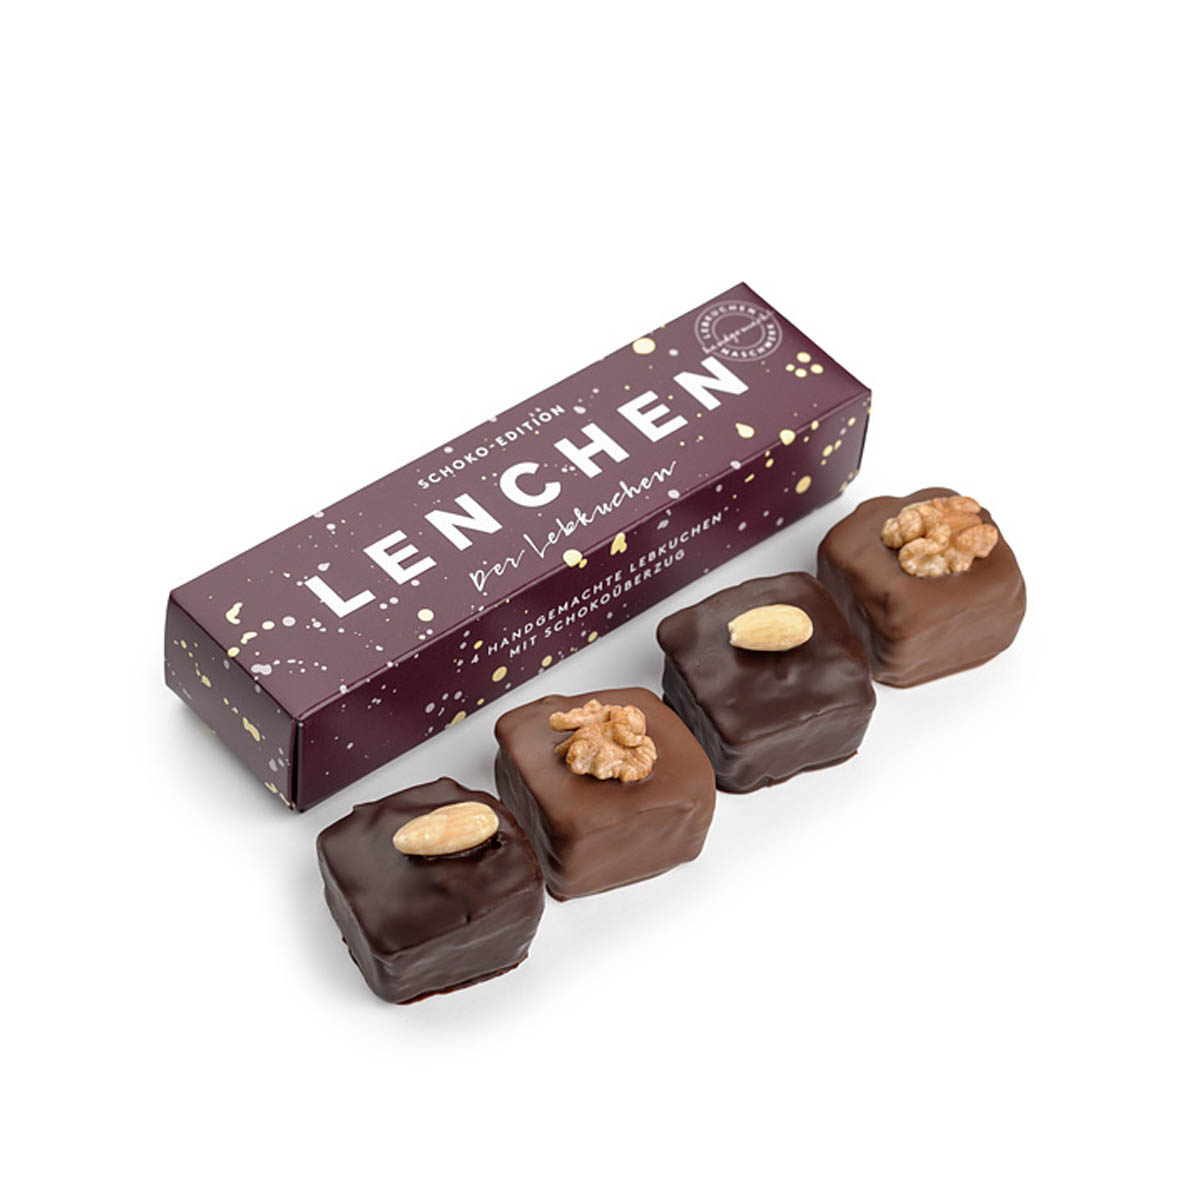 Lenchen - Der Lebkuchen mit Schoko - 2x 2 Stück in einer Box - 120 g online kaufen bei Kaffee Rauscher